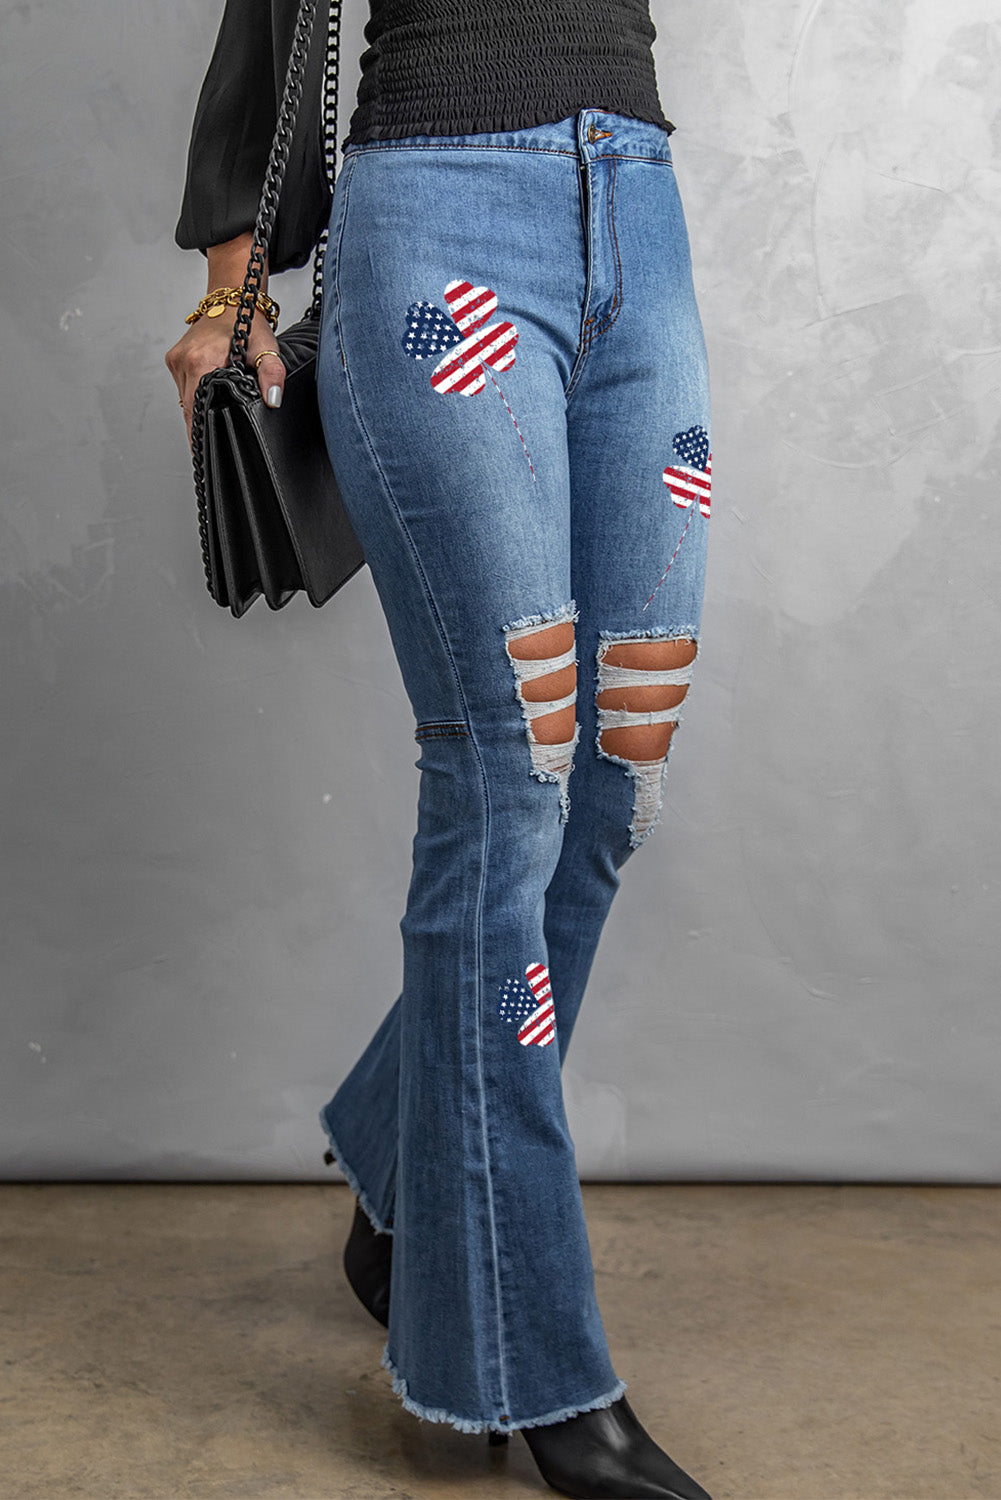 Jeans svasati effetto vissuto con stampa trifoglio e bandiera americana del giorno di San Patrizio, colore azzurro cielo